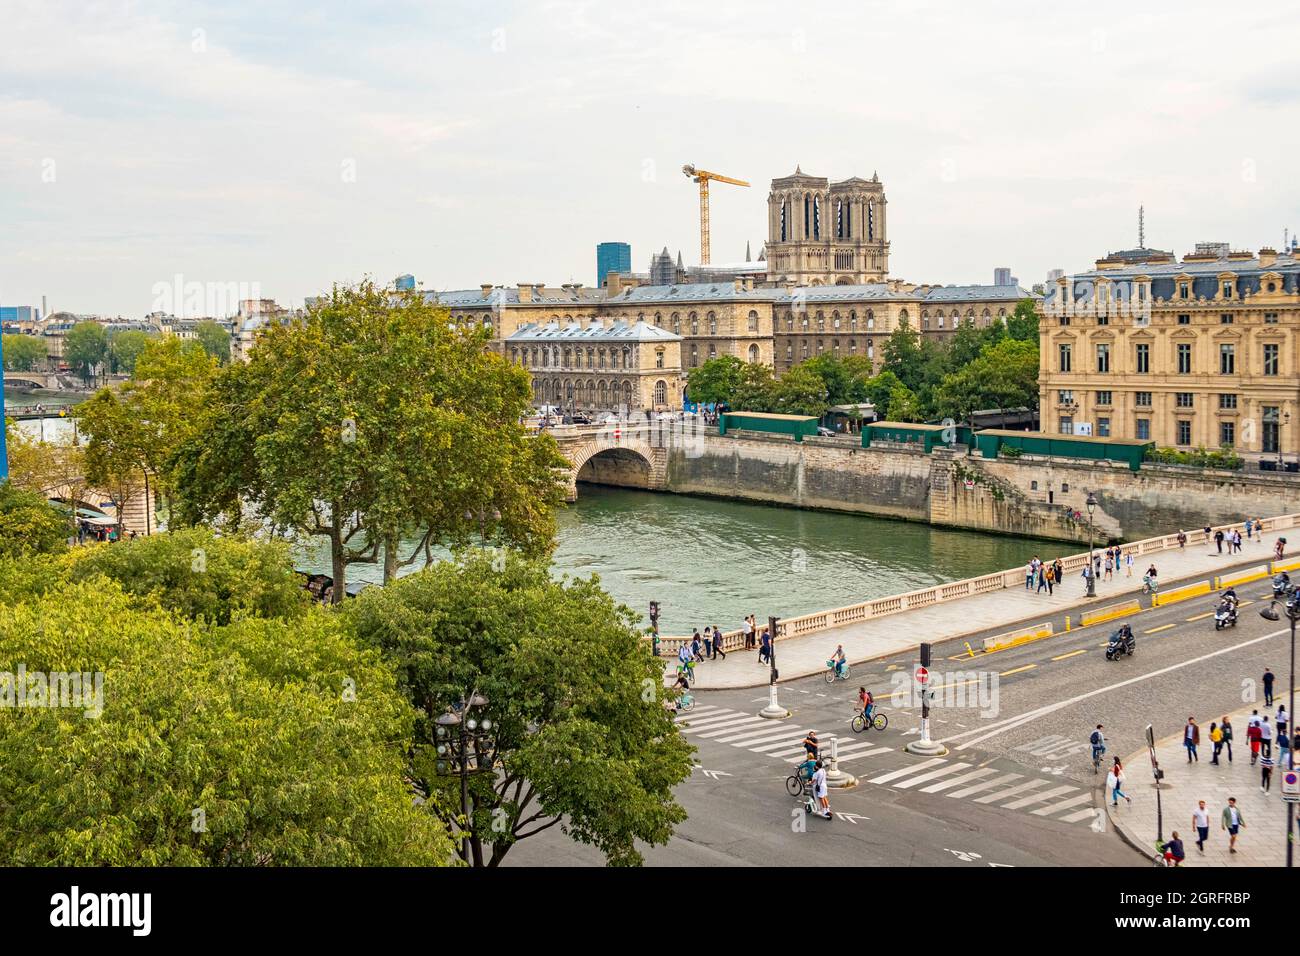 Frankreich, Paris, UNESCO-Weltkulturerbe, seine, Pont au change, Conciergerie und Notre Dame de Paris Stockfoto